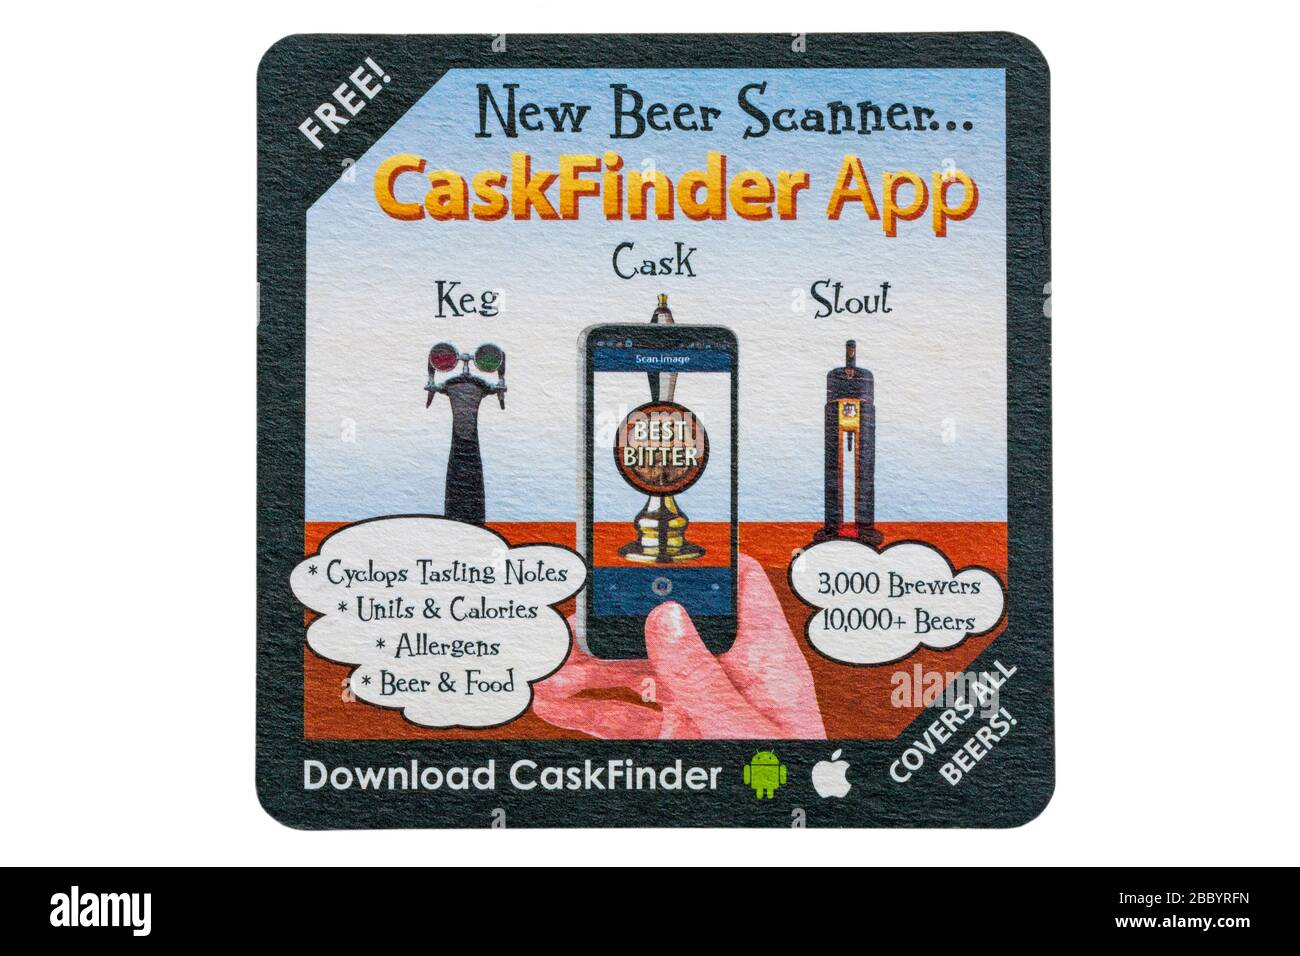 Nouveau scanner à bière CaskFinder App, dessous de verre isolé sur fond blanc - pour l'inverse des dessous de verre, voir 2BBYRH2 Banque D'Images